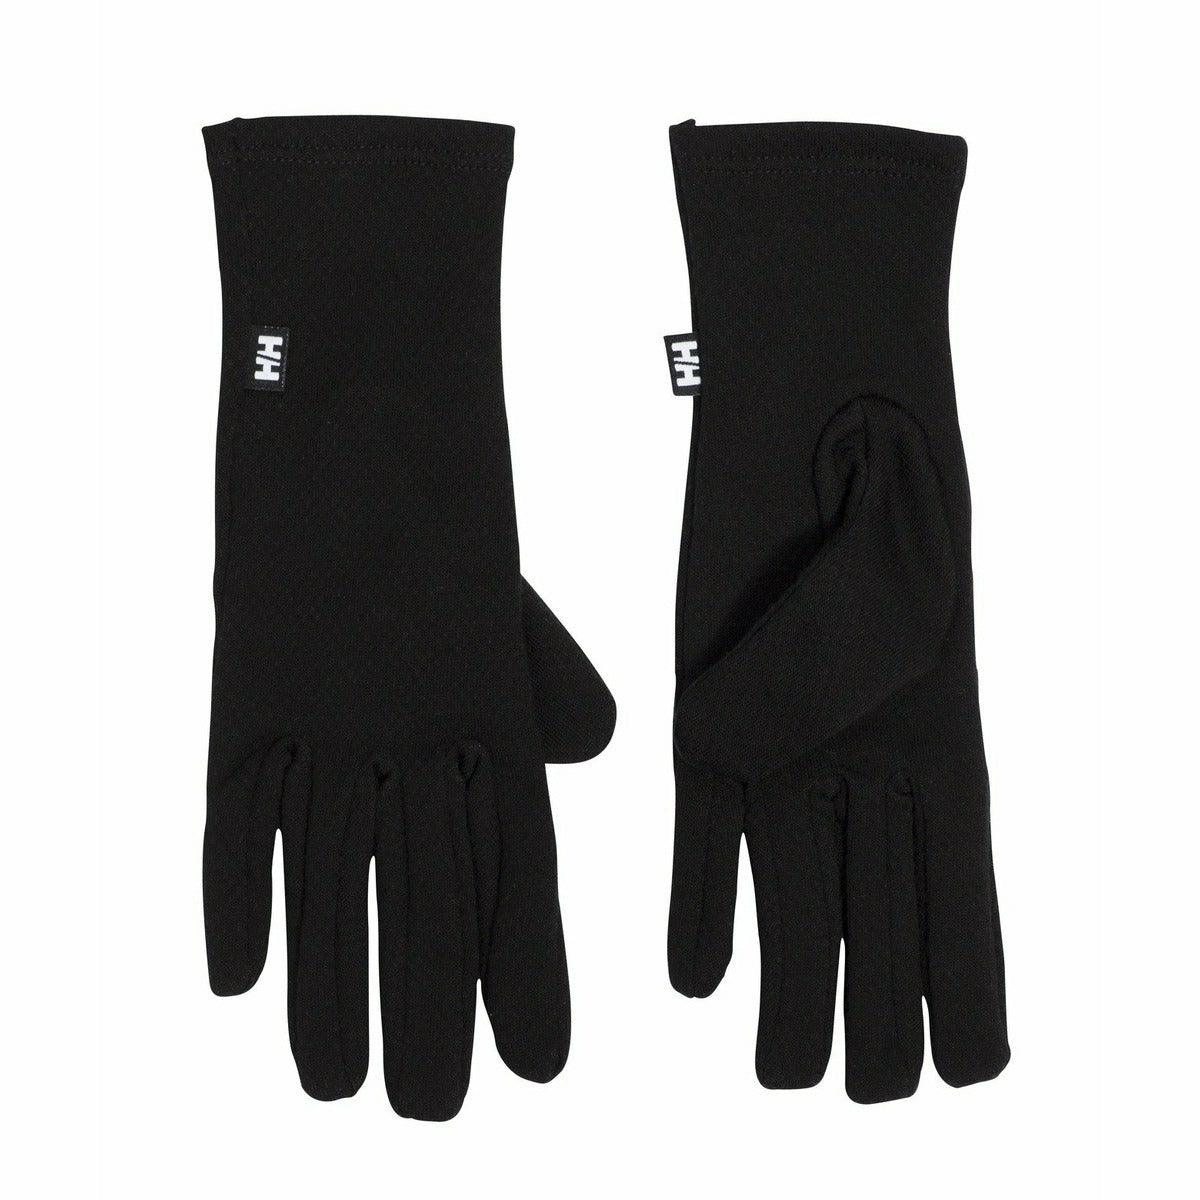 Helly Hansen Handschuhe Hh Lifa Merino Glove Liner Unisex im Outlet Sale